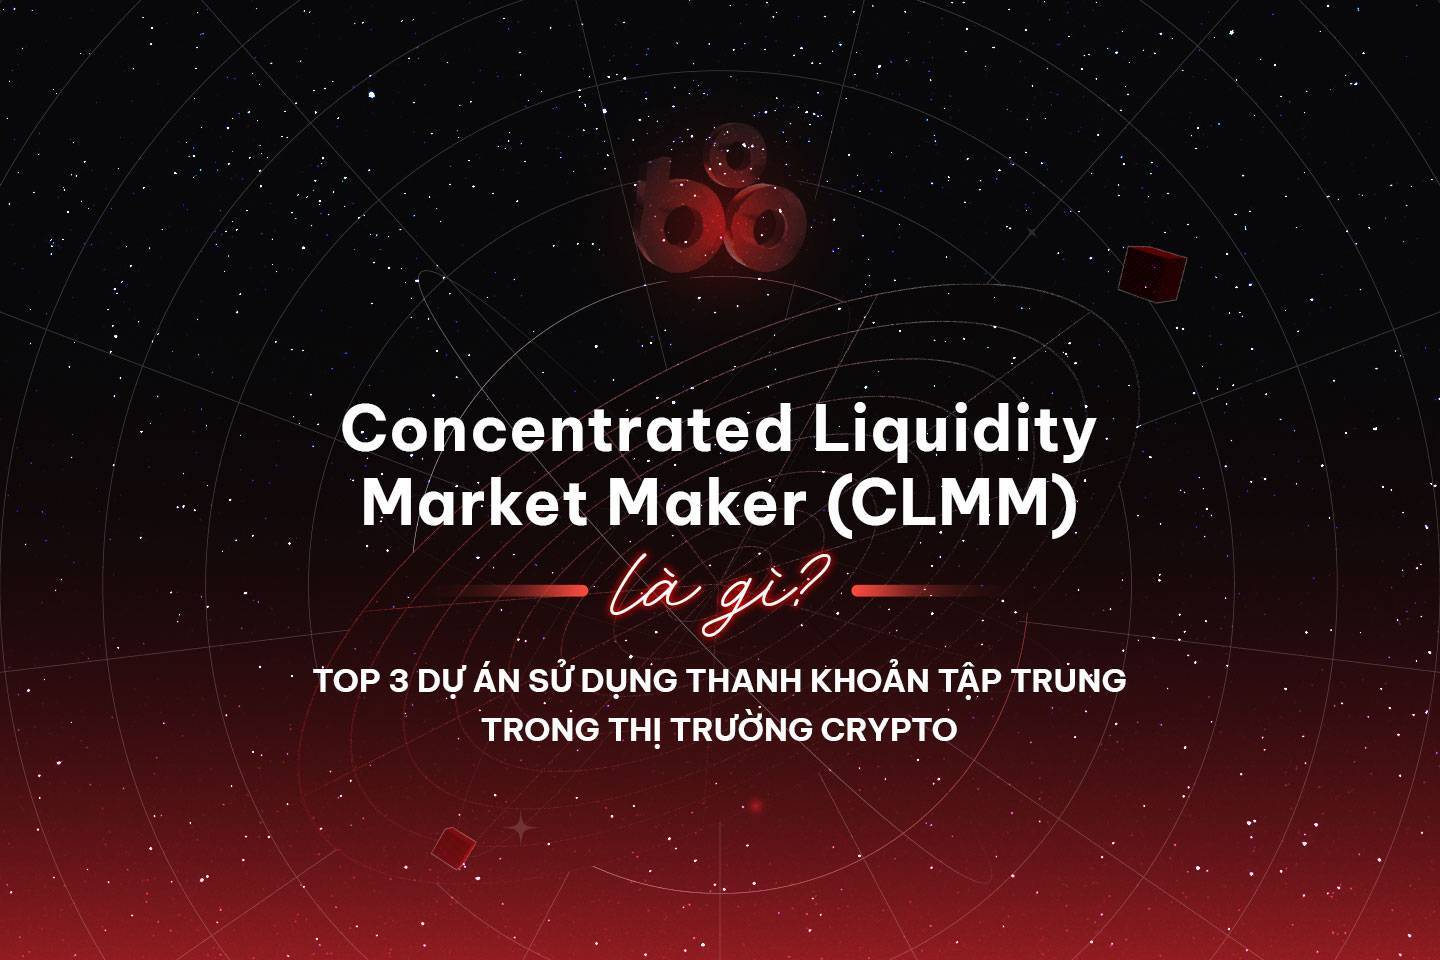 Concentrated Liquidity Market Maker (CLMM) là gì? Top 3 dự án sử dụng thanh khoản tập trung trong thị trường Crypto